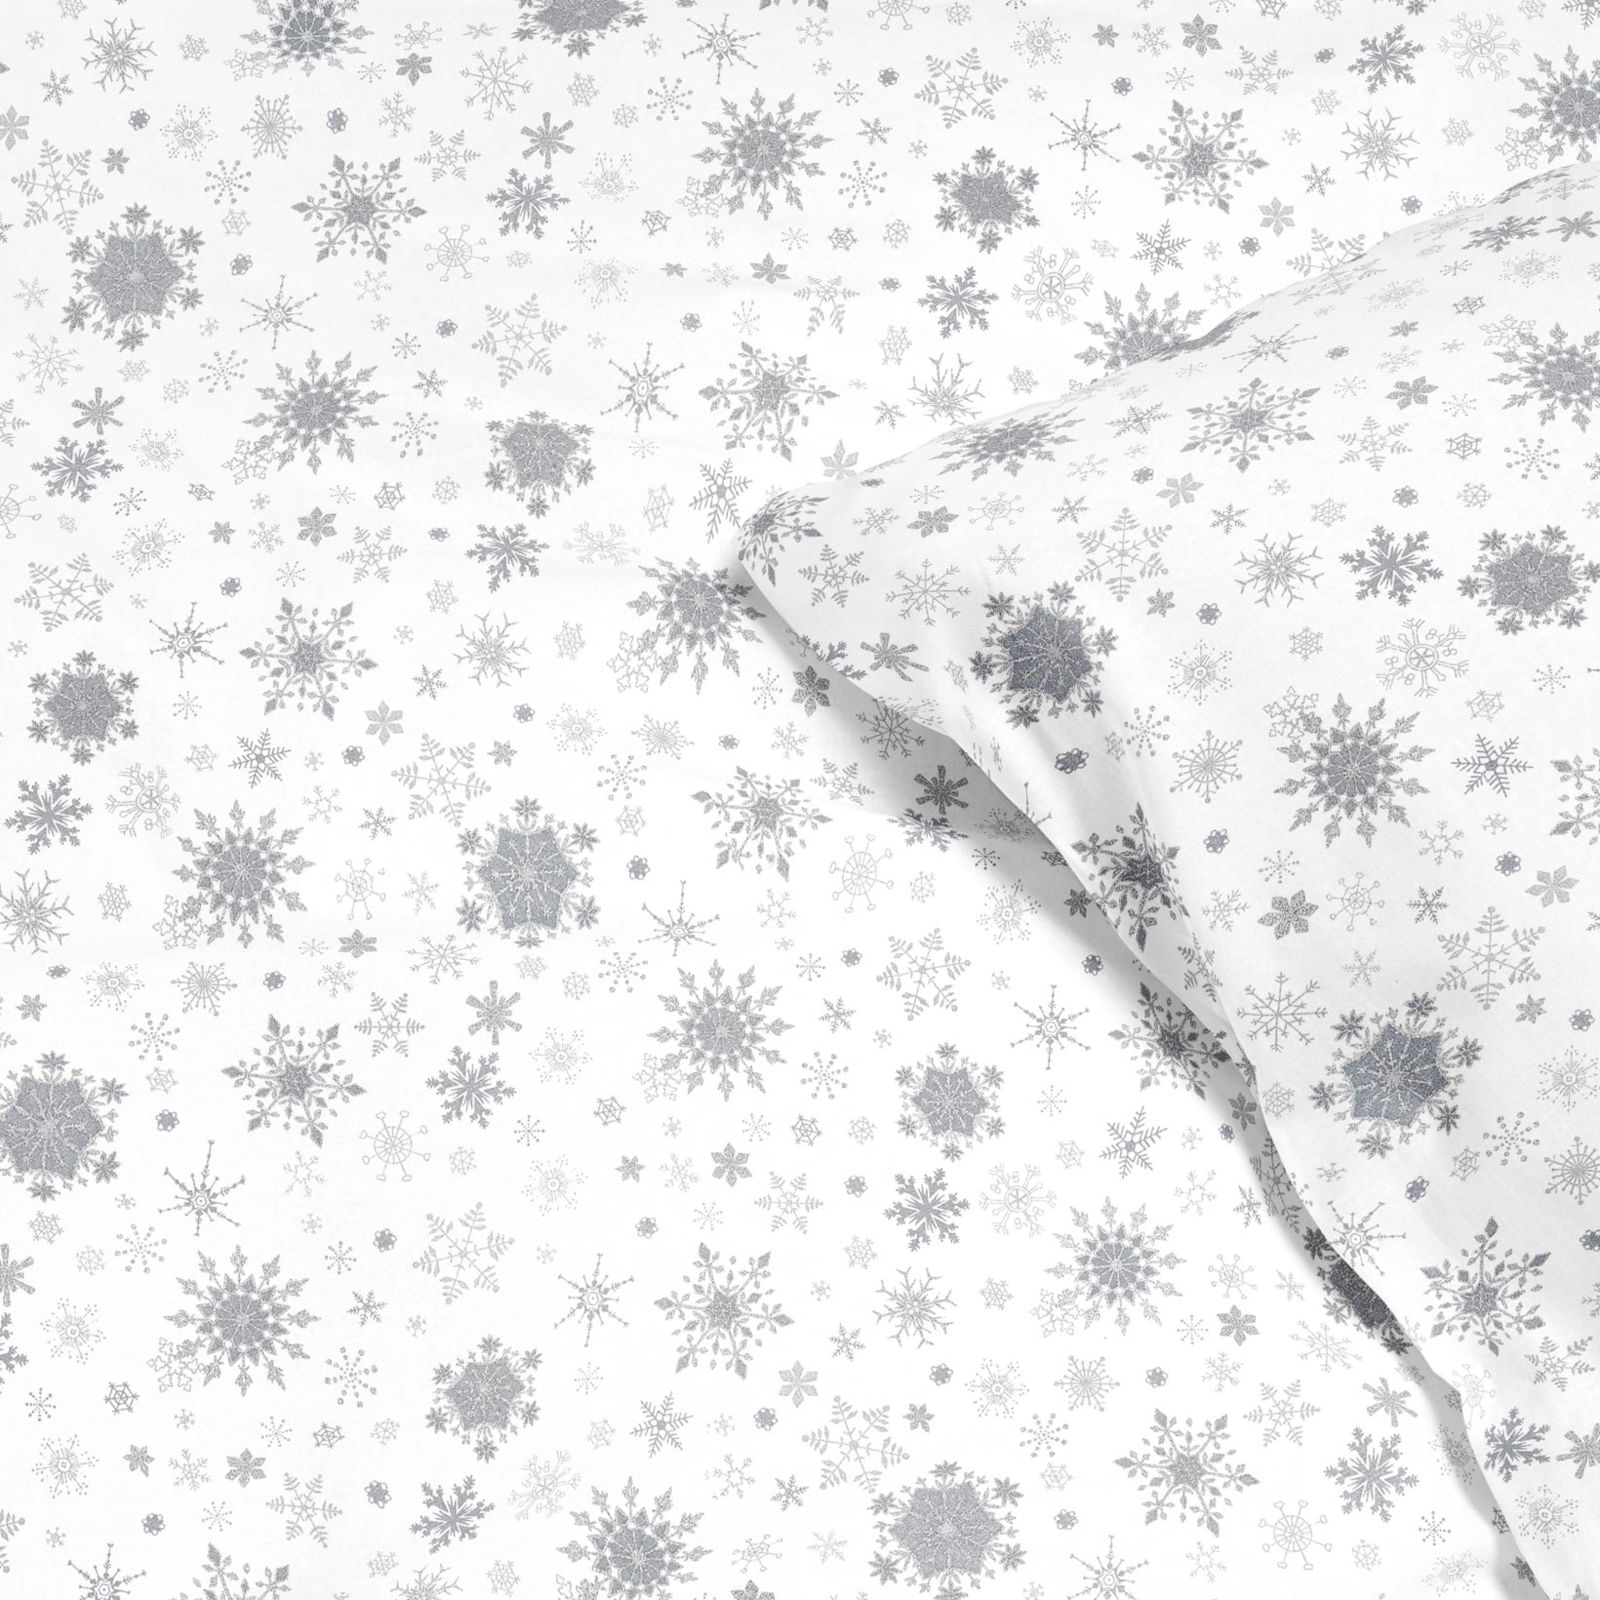 Lenjerie de pat din 100% bumbac exclusiv - fulgi de zăpadă argintii pe alb